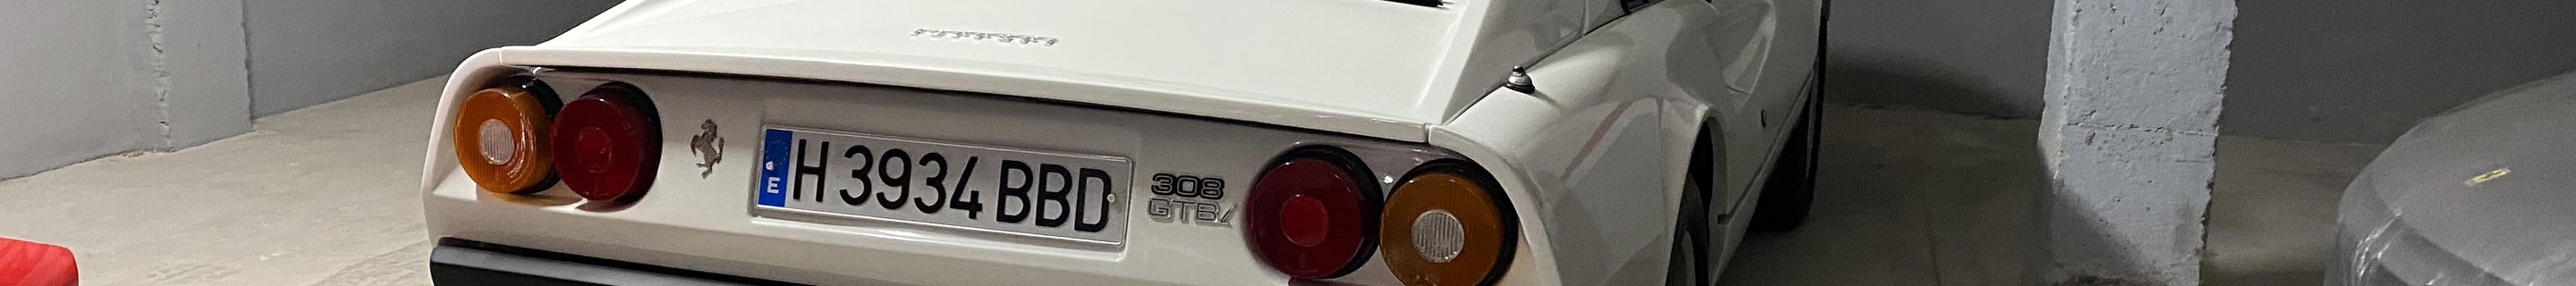 Ferrari 308 GTBi